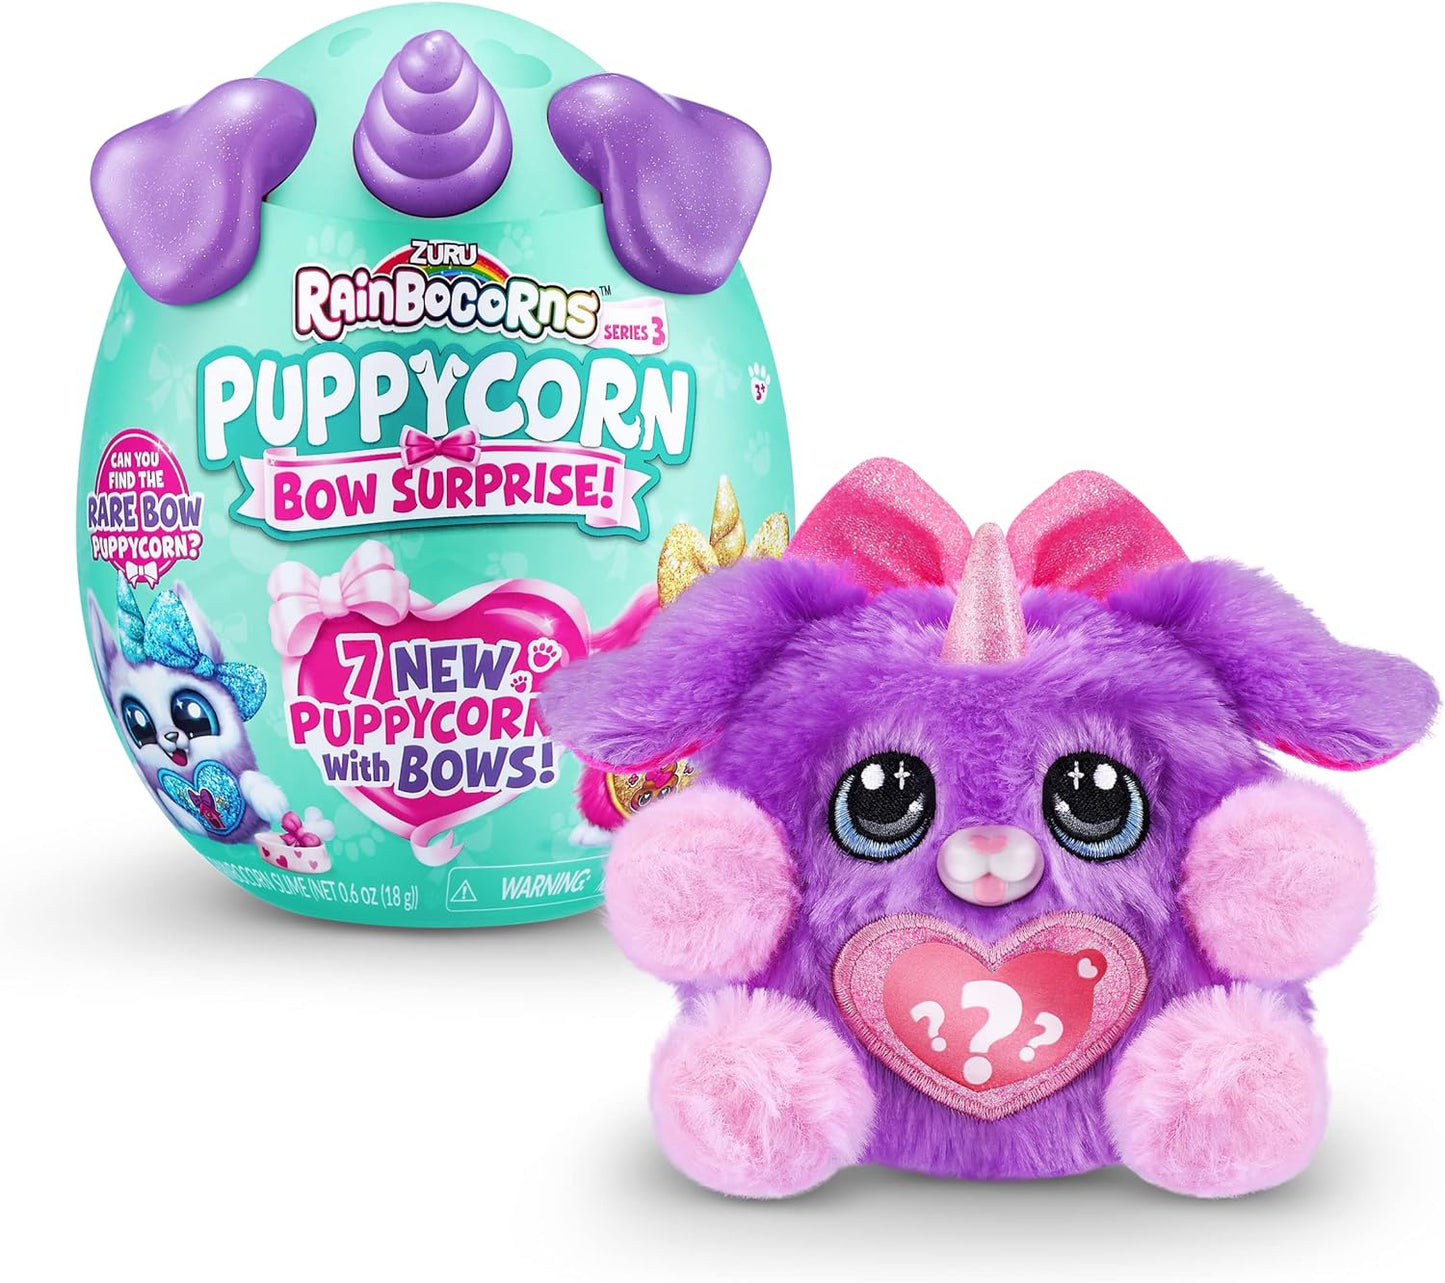 Zuru Rainborcorns: Puppycorn Surprise S6